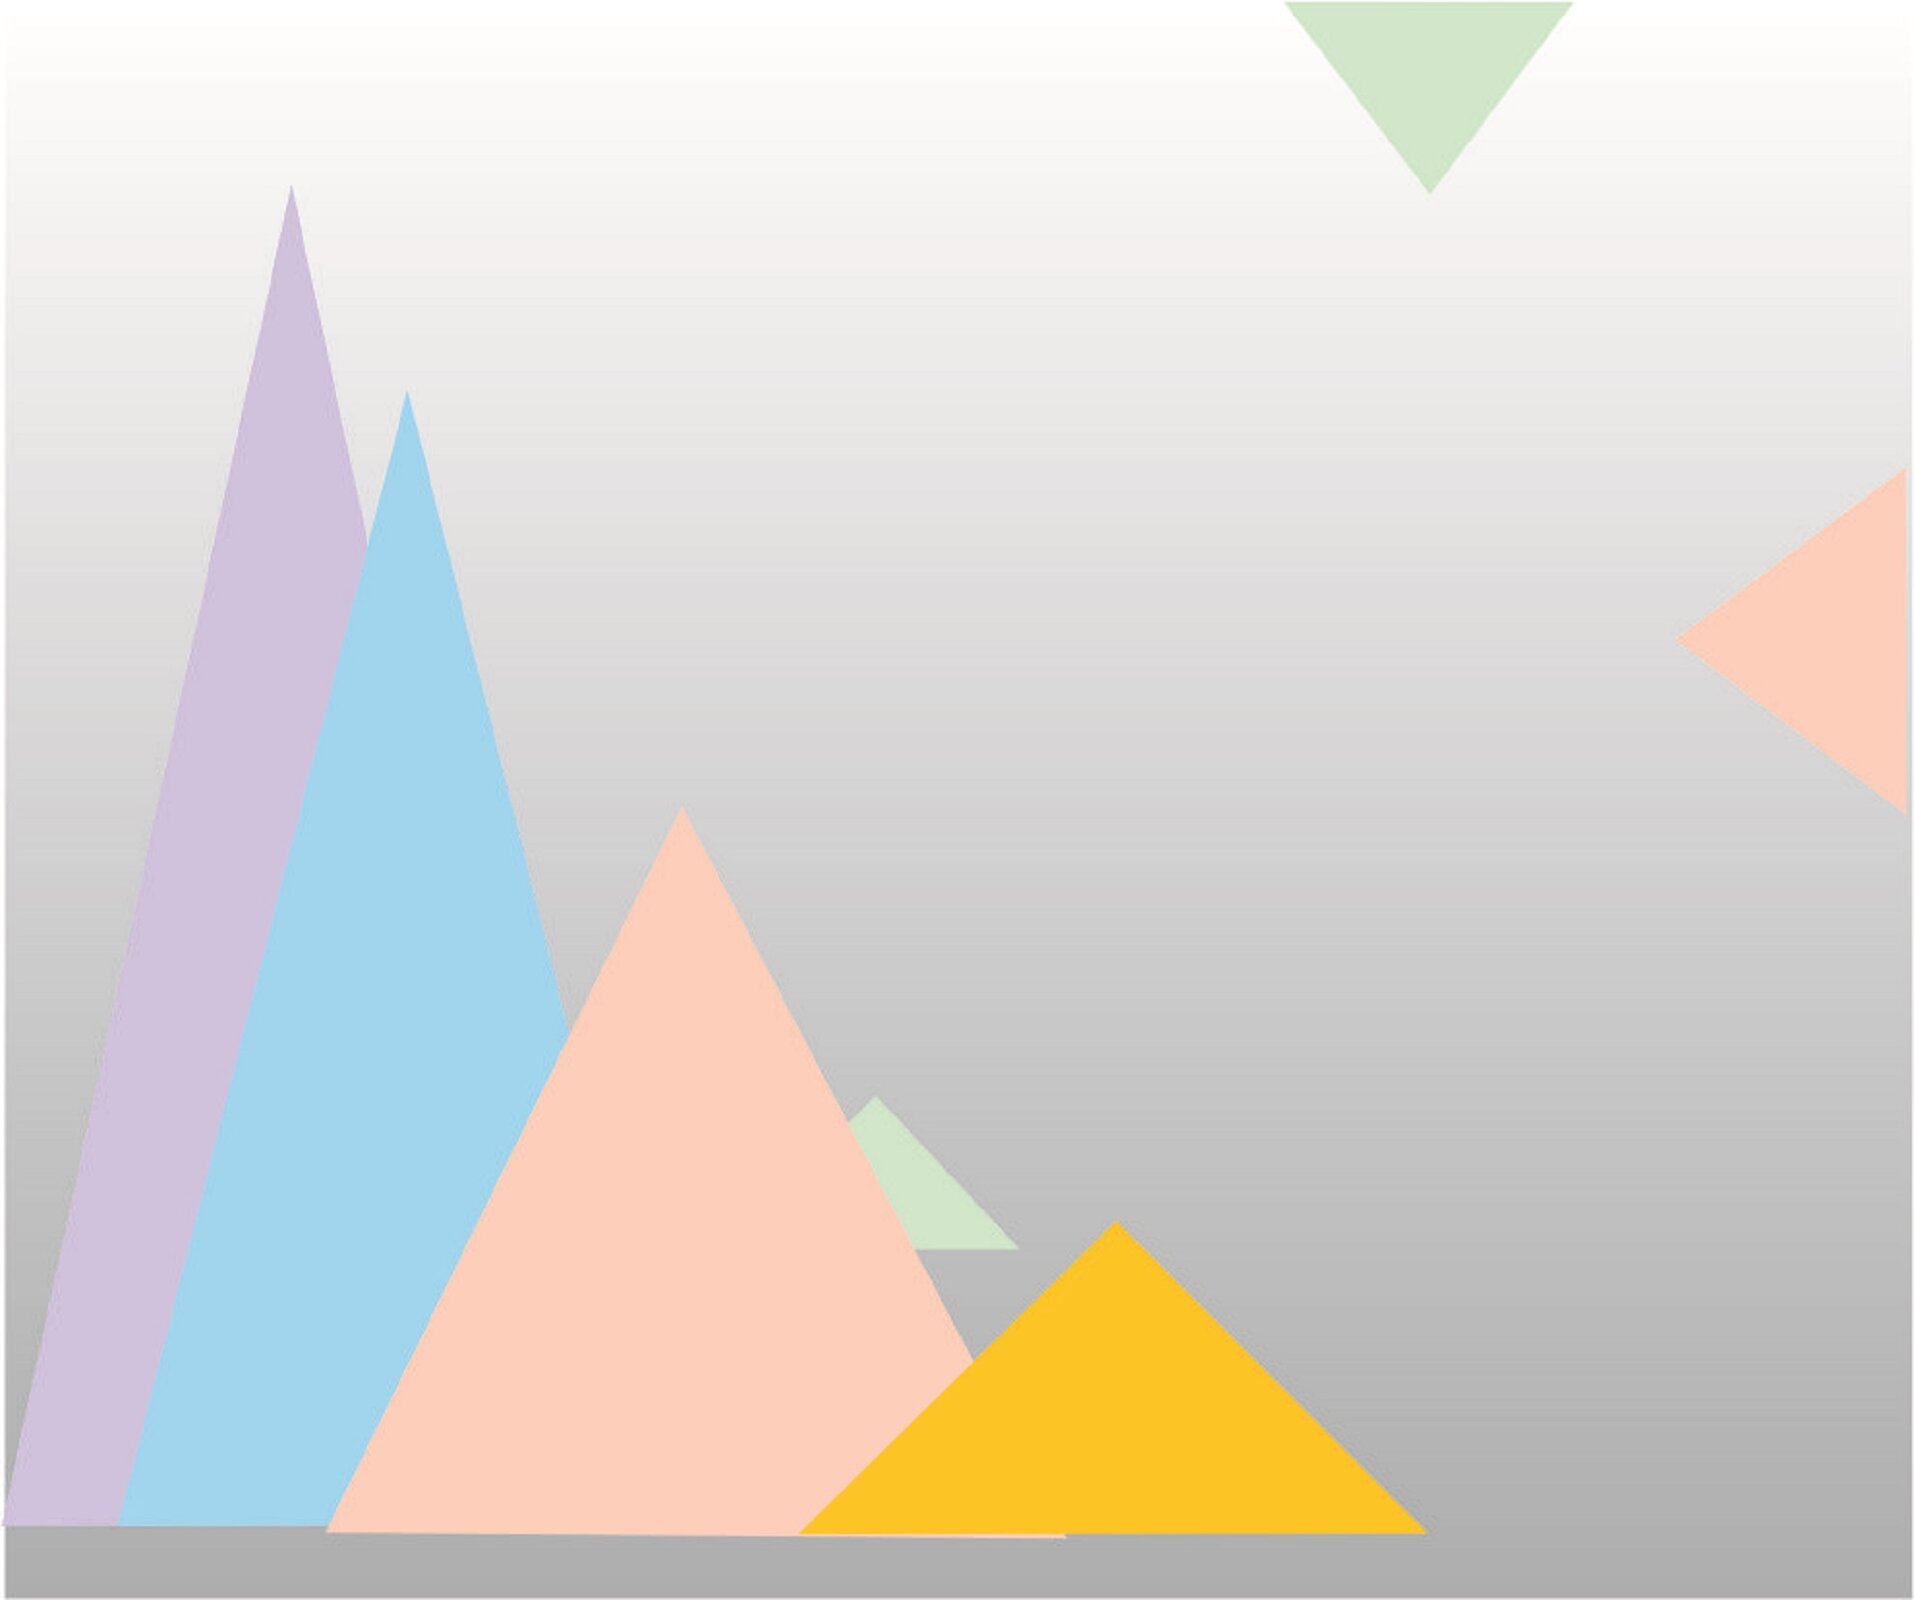 Ilustracja przedstawia grafikę ukazującą wagę kolorów ciepłych i chłodnych w obrazie. Na dole, po lewej stronie znajdują się cztery, ułożone jeden za drugim trójkąty. Żółty najmniejszy, znajduje się z przodu. Za nim znajdują się kolejno różowy, błękitny oraz fioletowy. Każdy kolejny trójkąt jest większy od poprzedniego. Za tą grupą figur, w głębi kompozycji umieszczony został zielony, mały trójkącik, którego fragment wystaje zza różowego trójkąta. W górnym prawym rogu umieszczone zostały kolejne dwa małe trójkąciki. U góry, styka się szerszym bokiem z górną krawędzią kompozycji zielony trójkącik. Obok, szerszym bokiem przylega do prawej krawędzi obrazu różowy trójkącik. Figury znajdują się na szarym tle, które rozjaśnia się u góry grafiki.